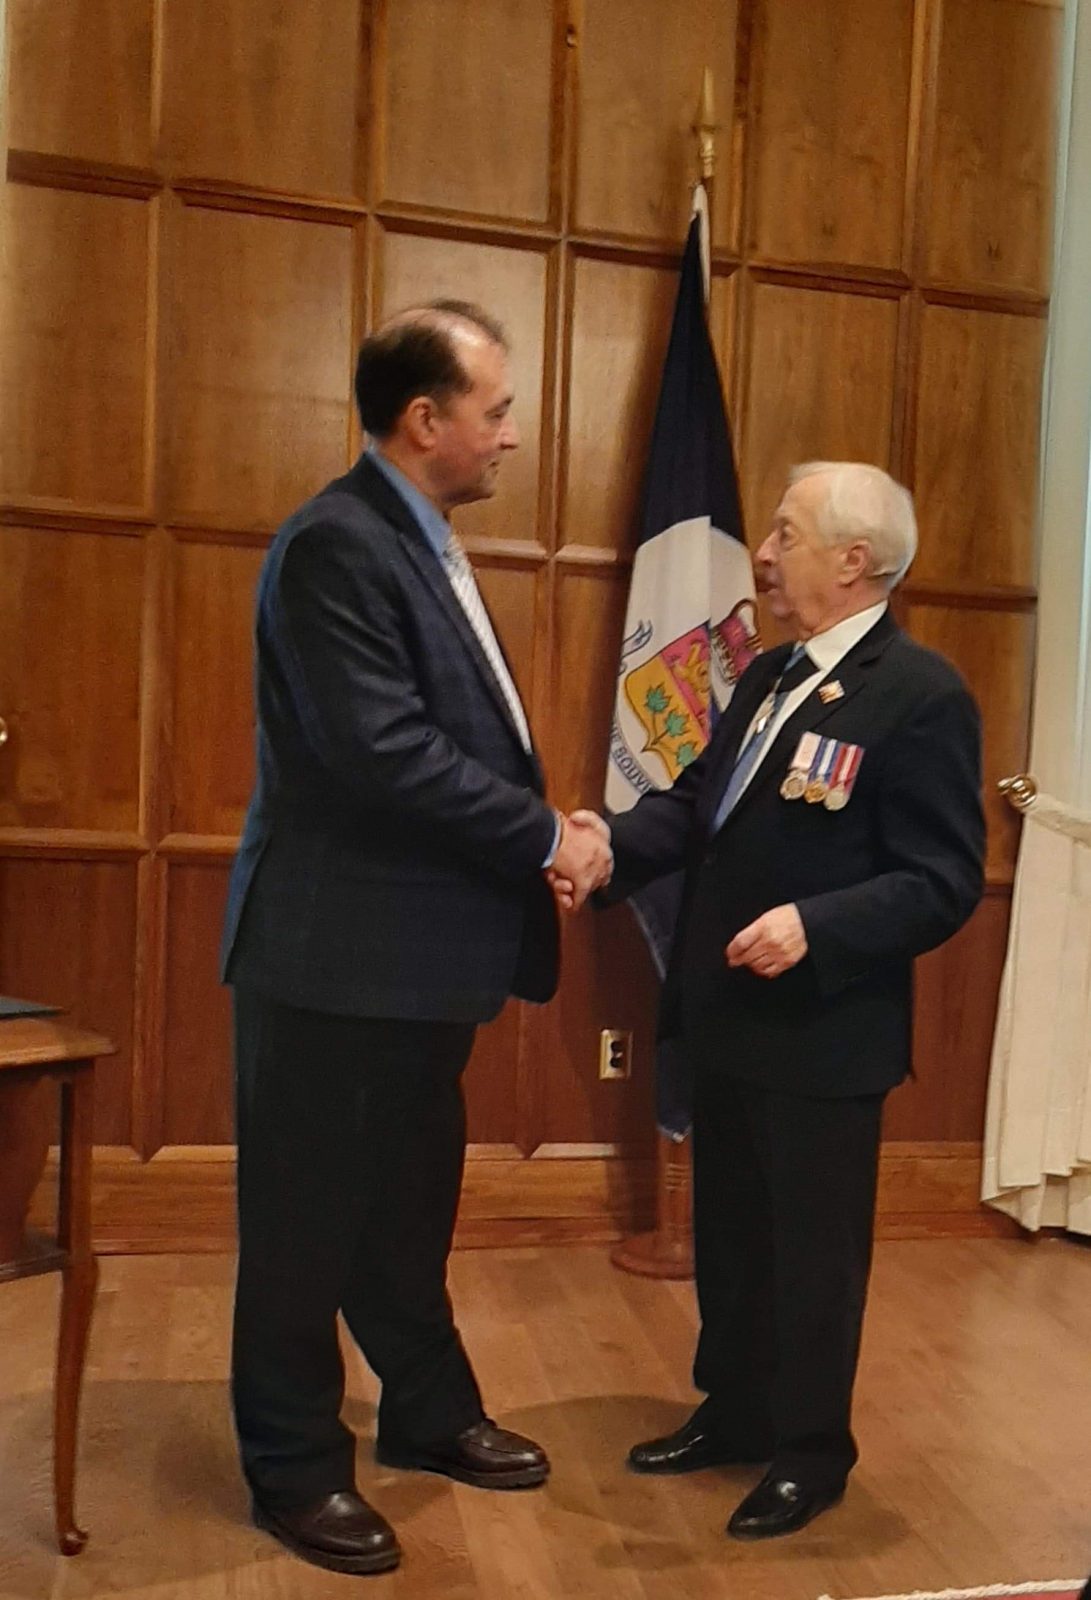 Jacques Fafard reçoit une médaille du lieutenant-gouverneur du Québec